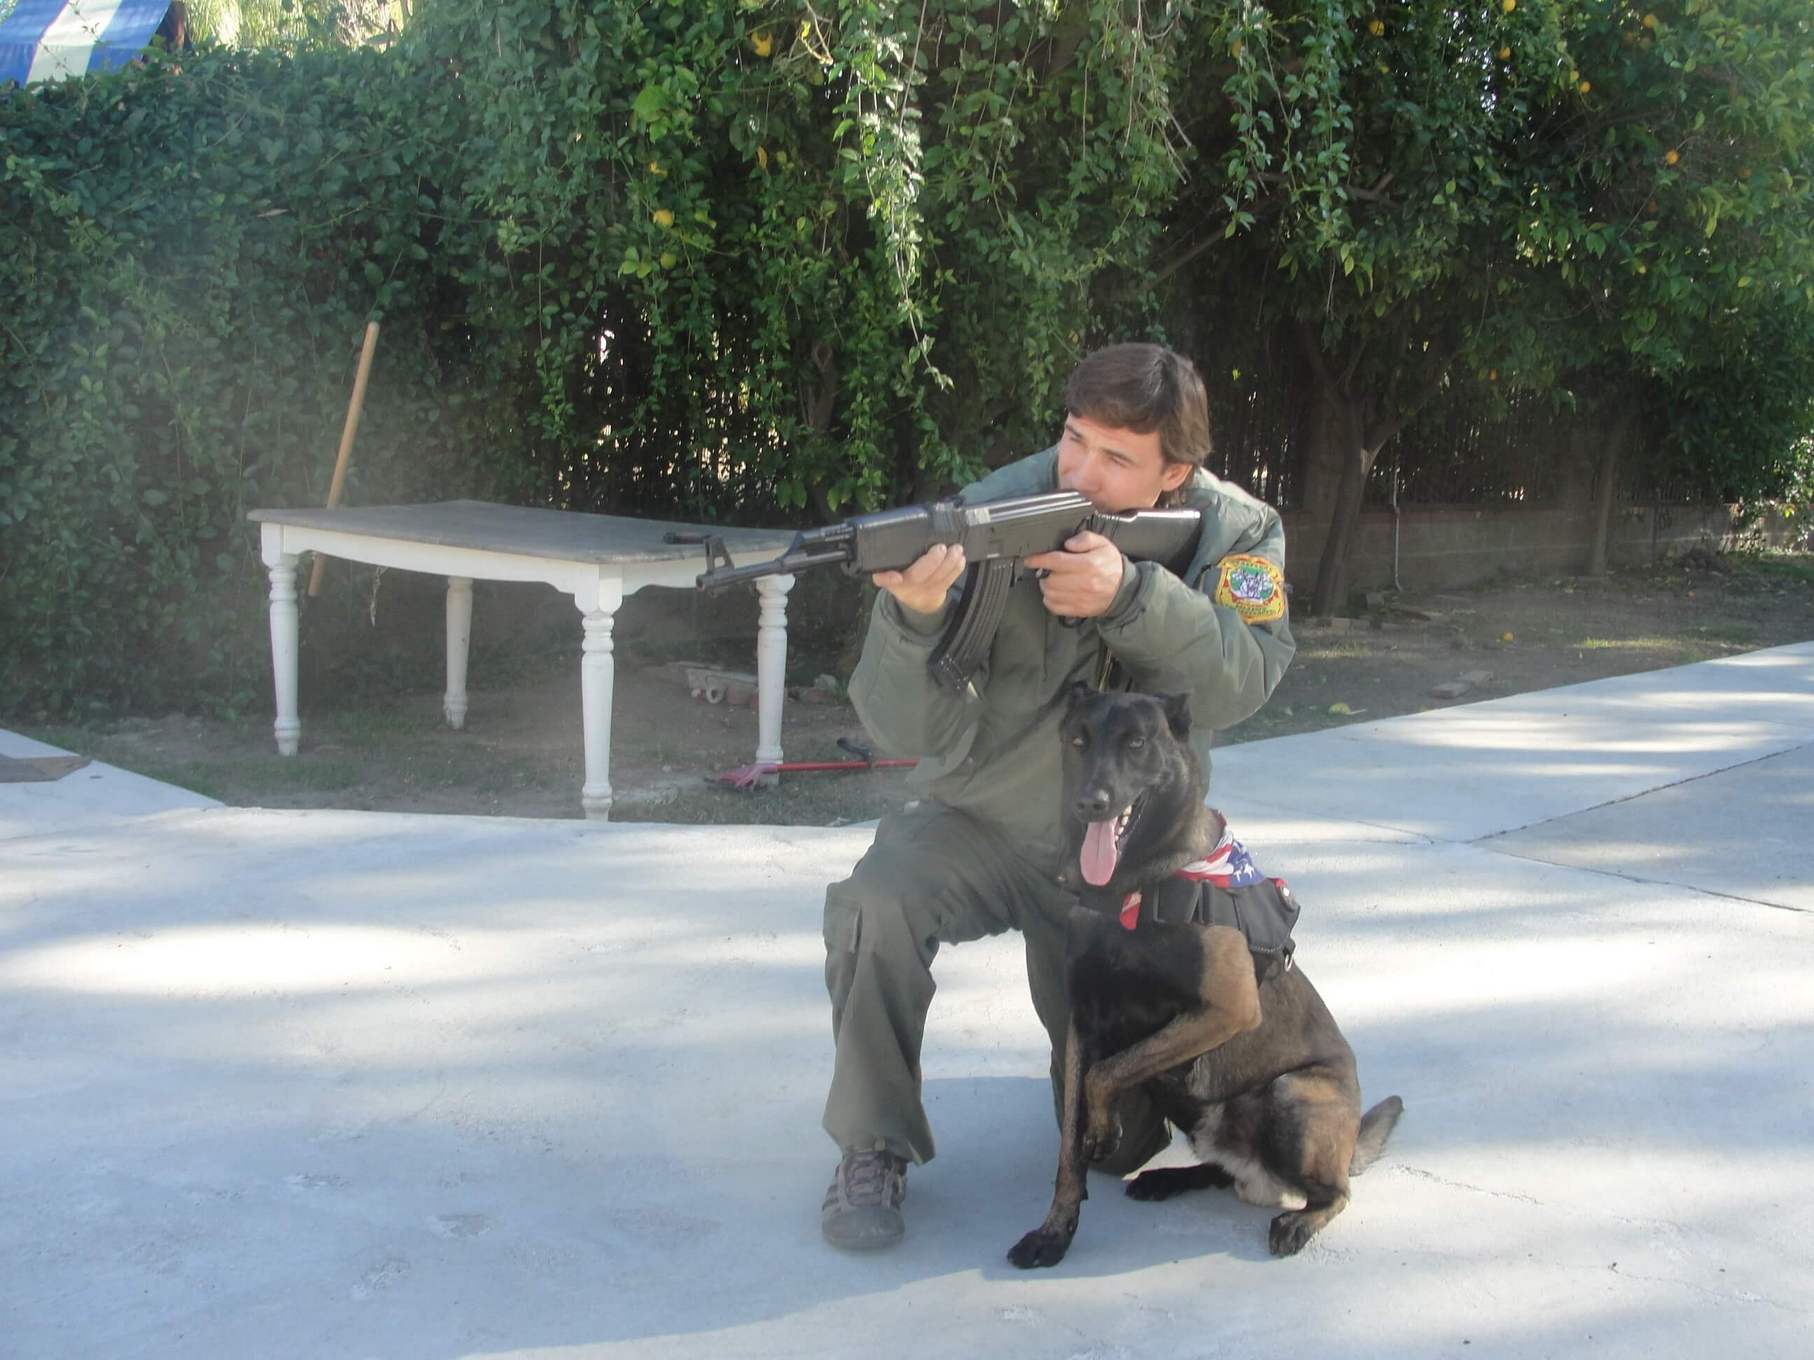 Dog Training - K9 course - Master Dog Training